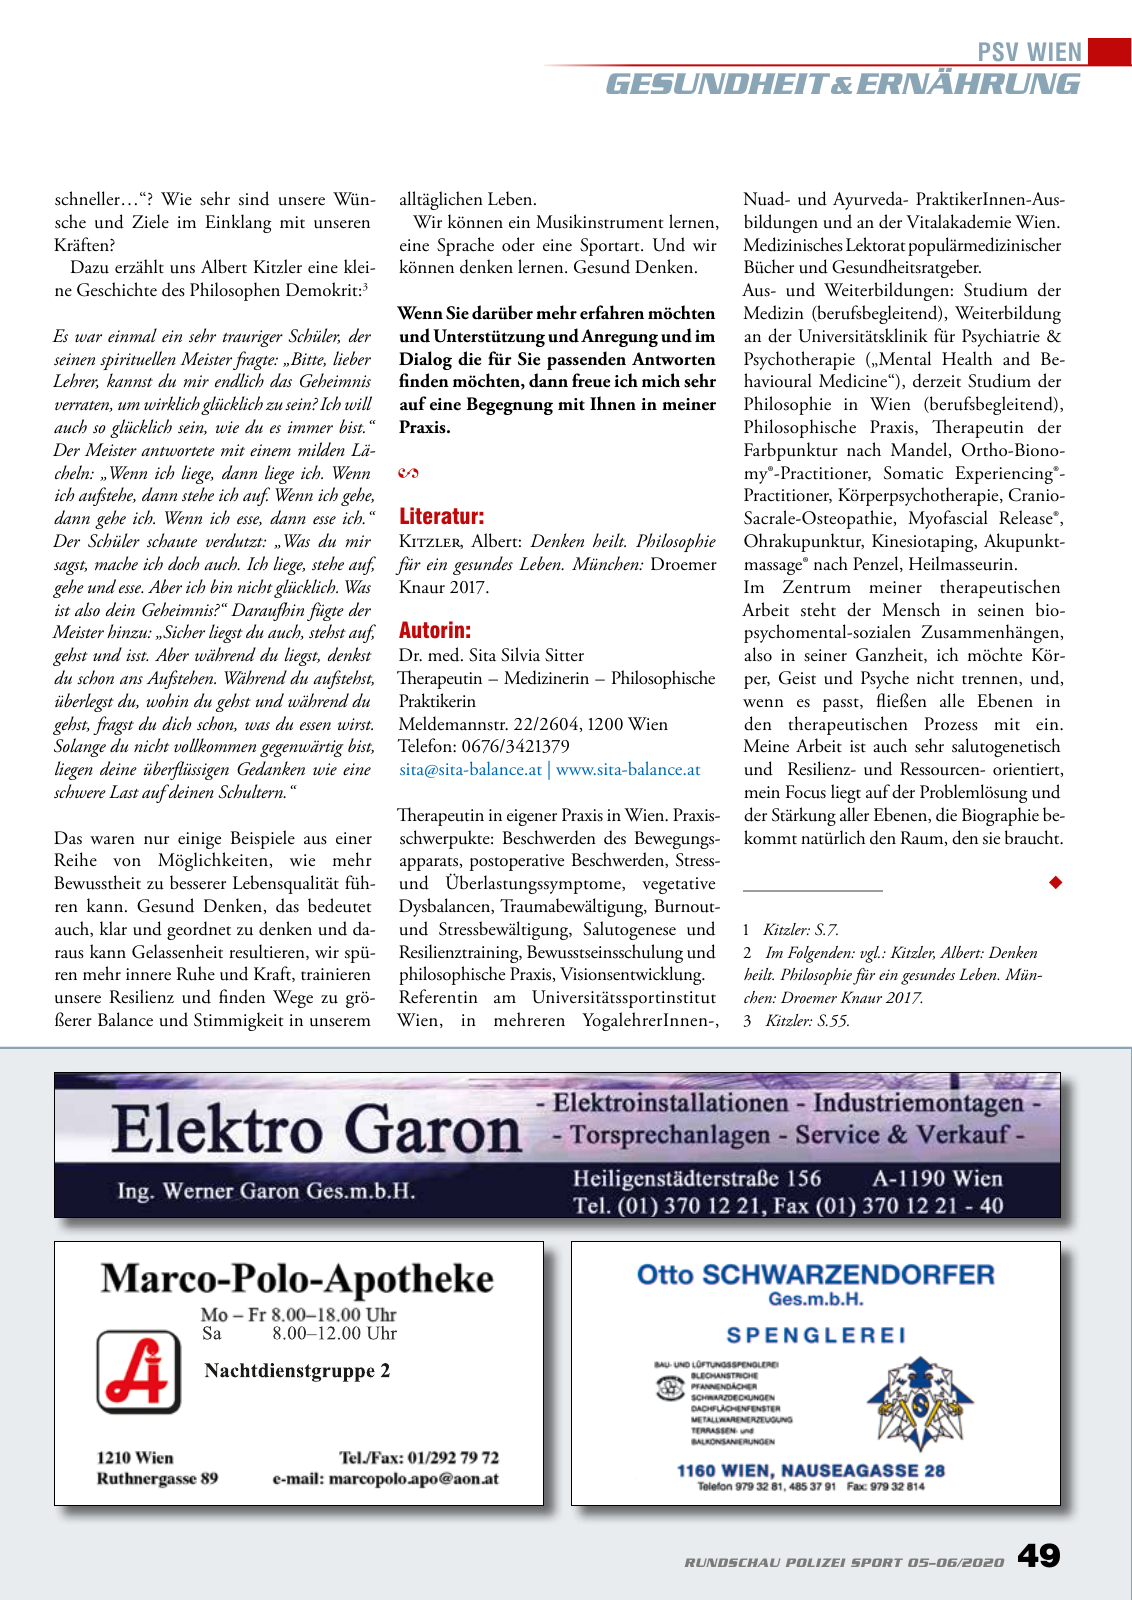 Vorschau Rundschau Polizei Sport 05-06/2020 Seite 49